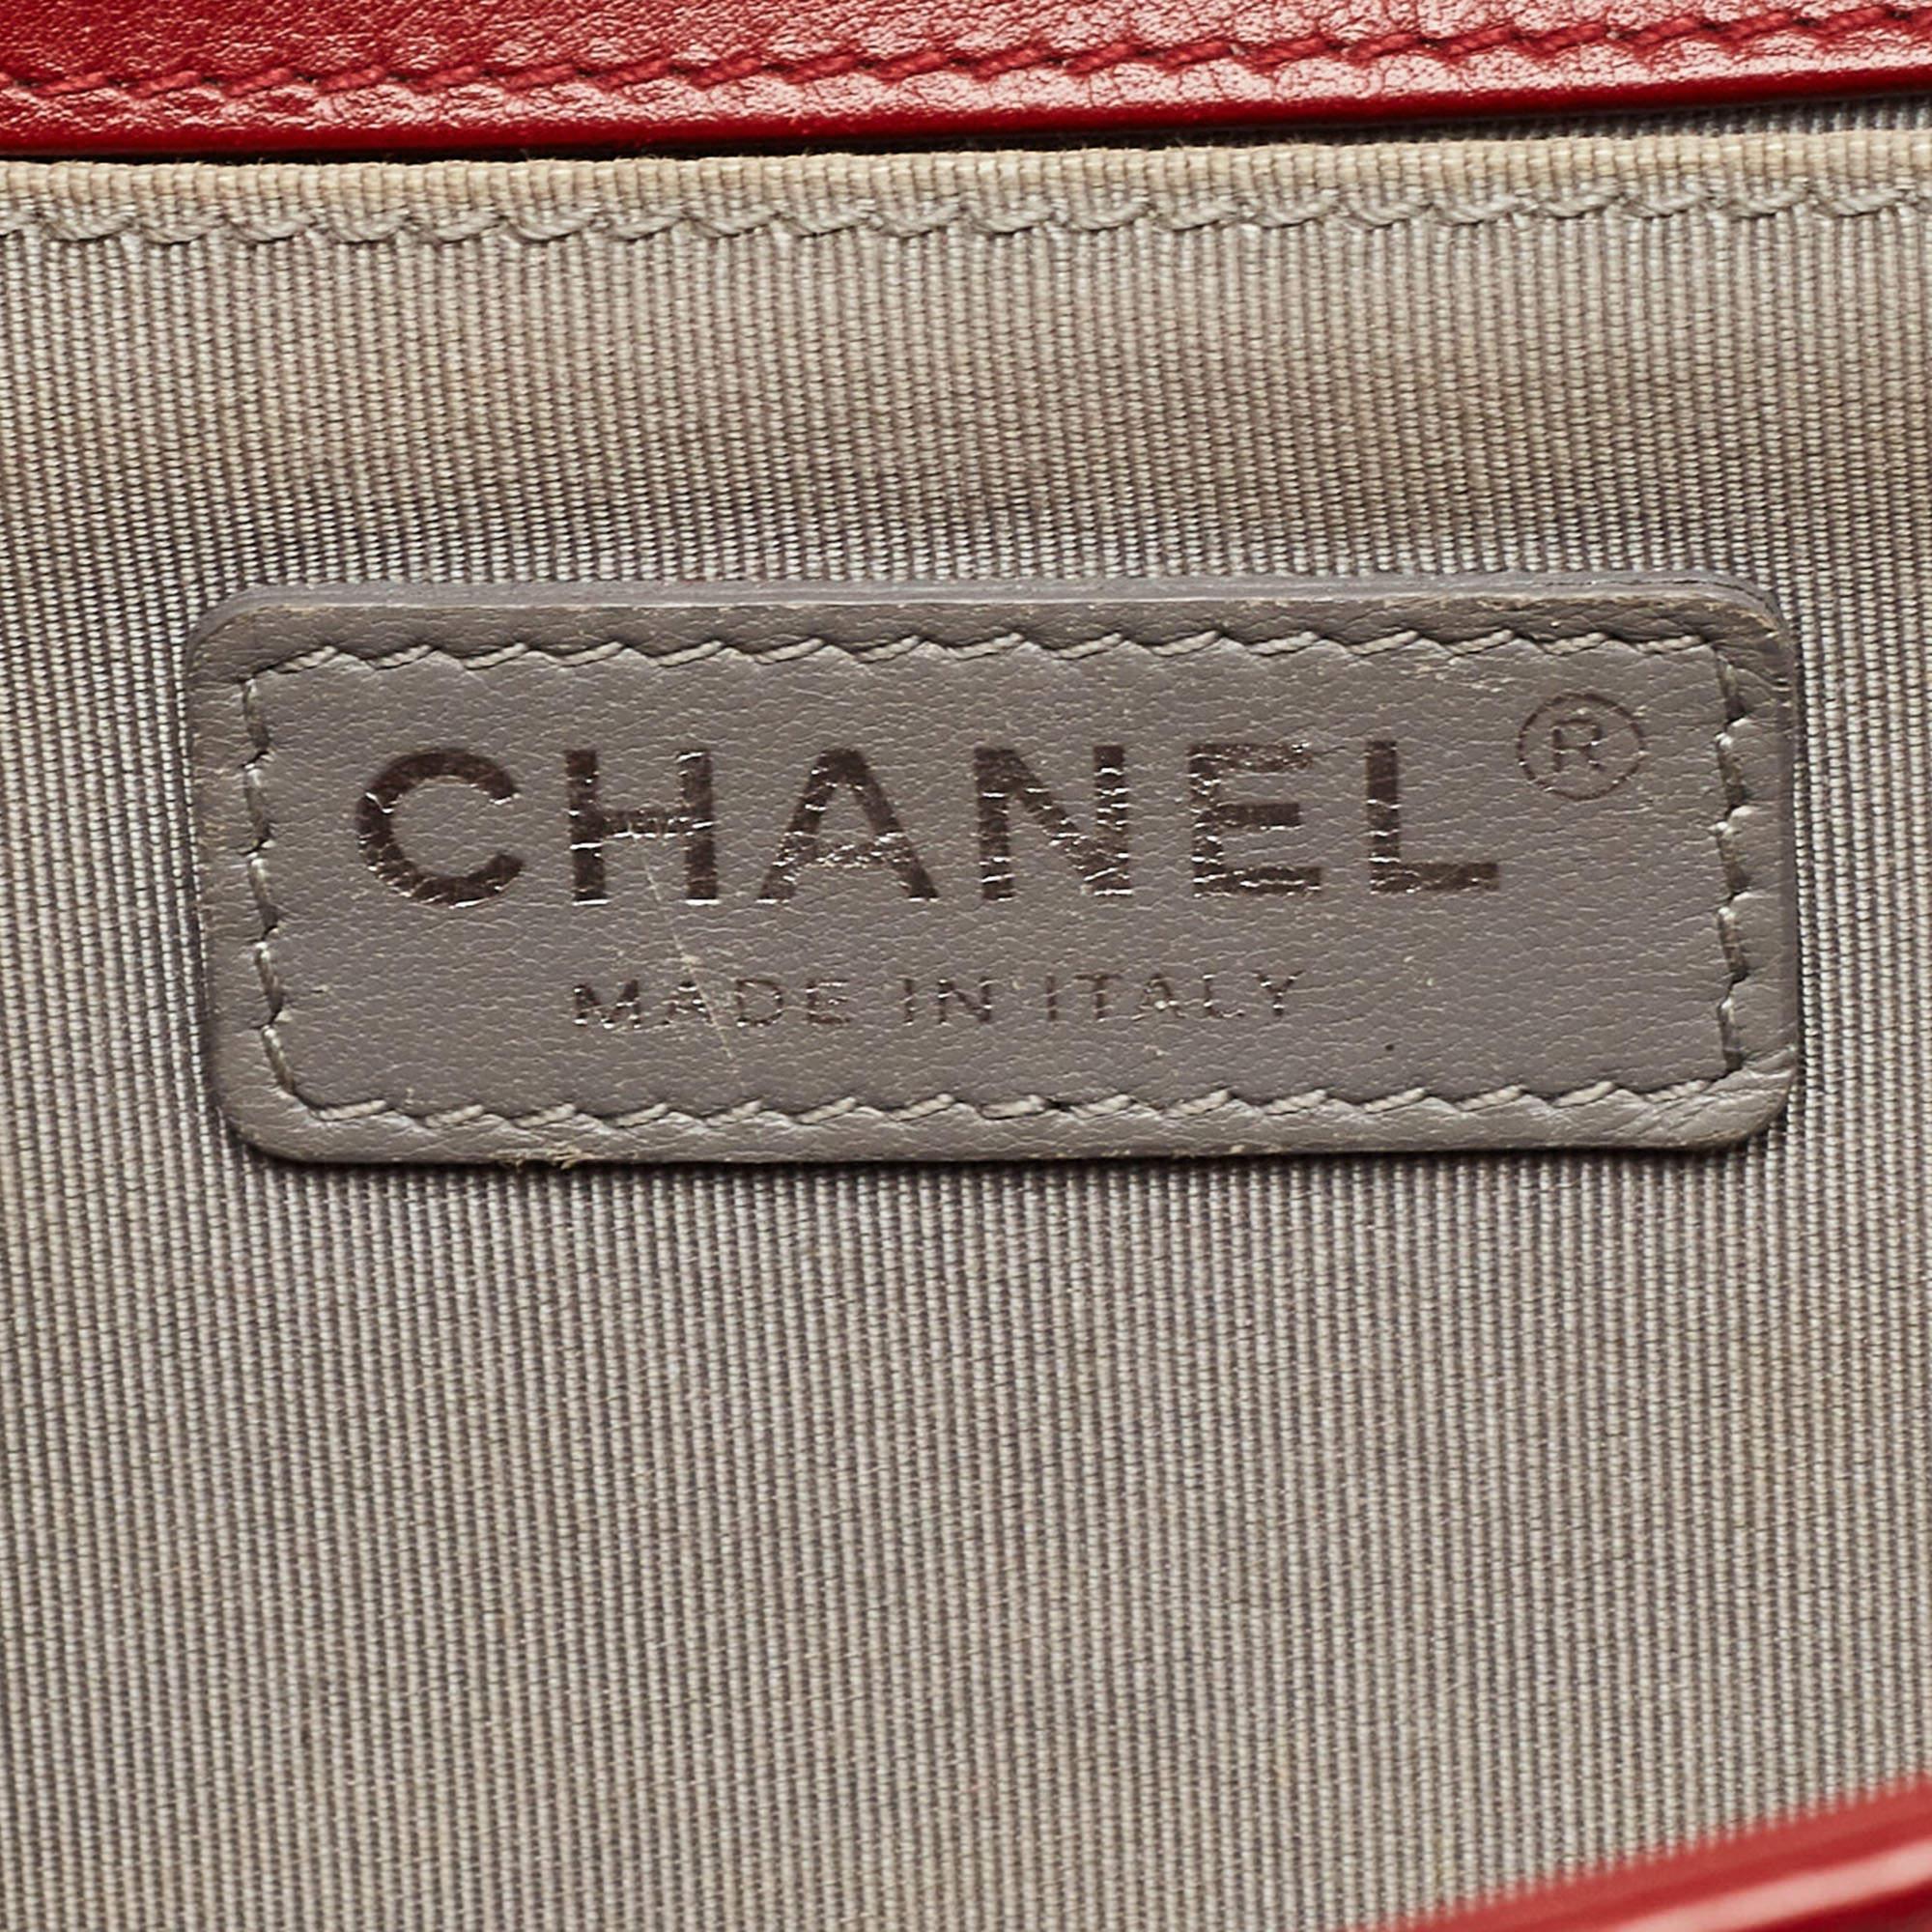 Chanel Red Chevron Leather Medium Boy Bag 6